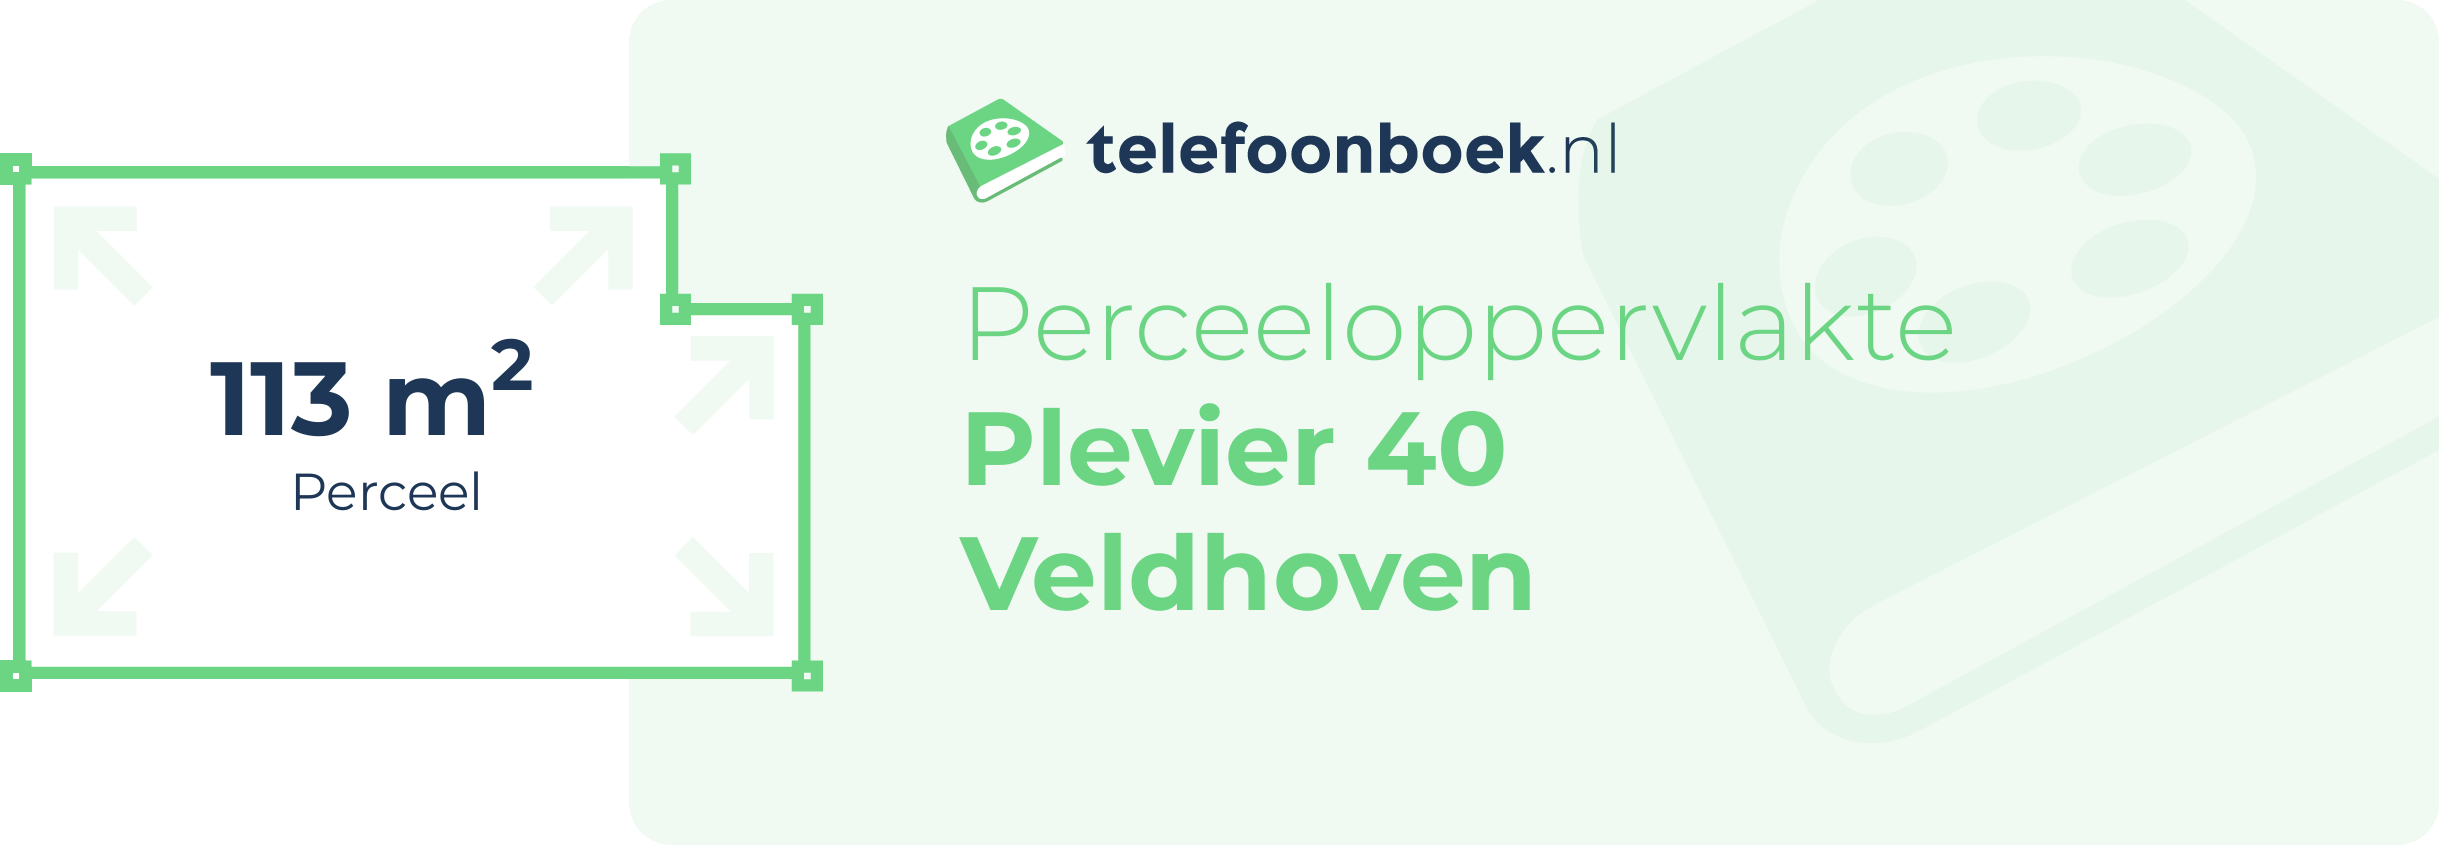 Perceeloppervlakte Plevier 40 Veldhoven